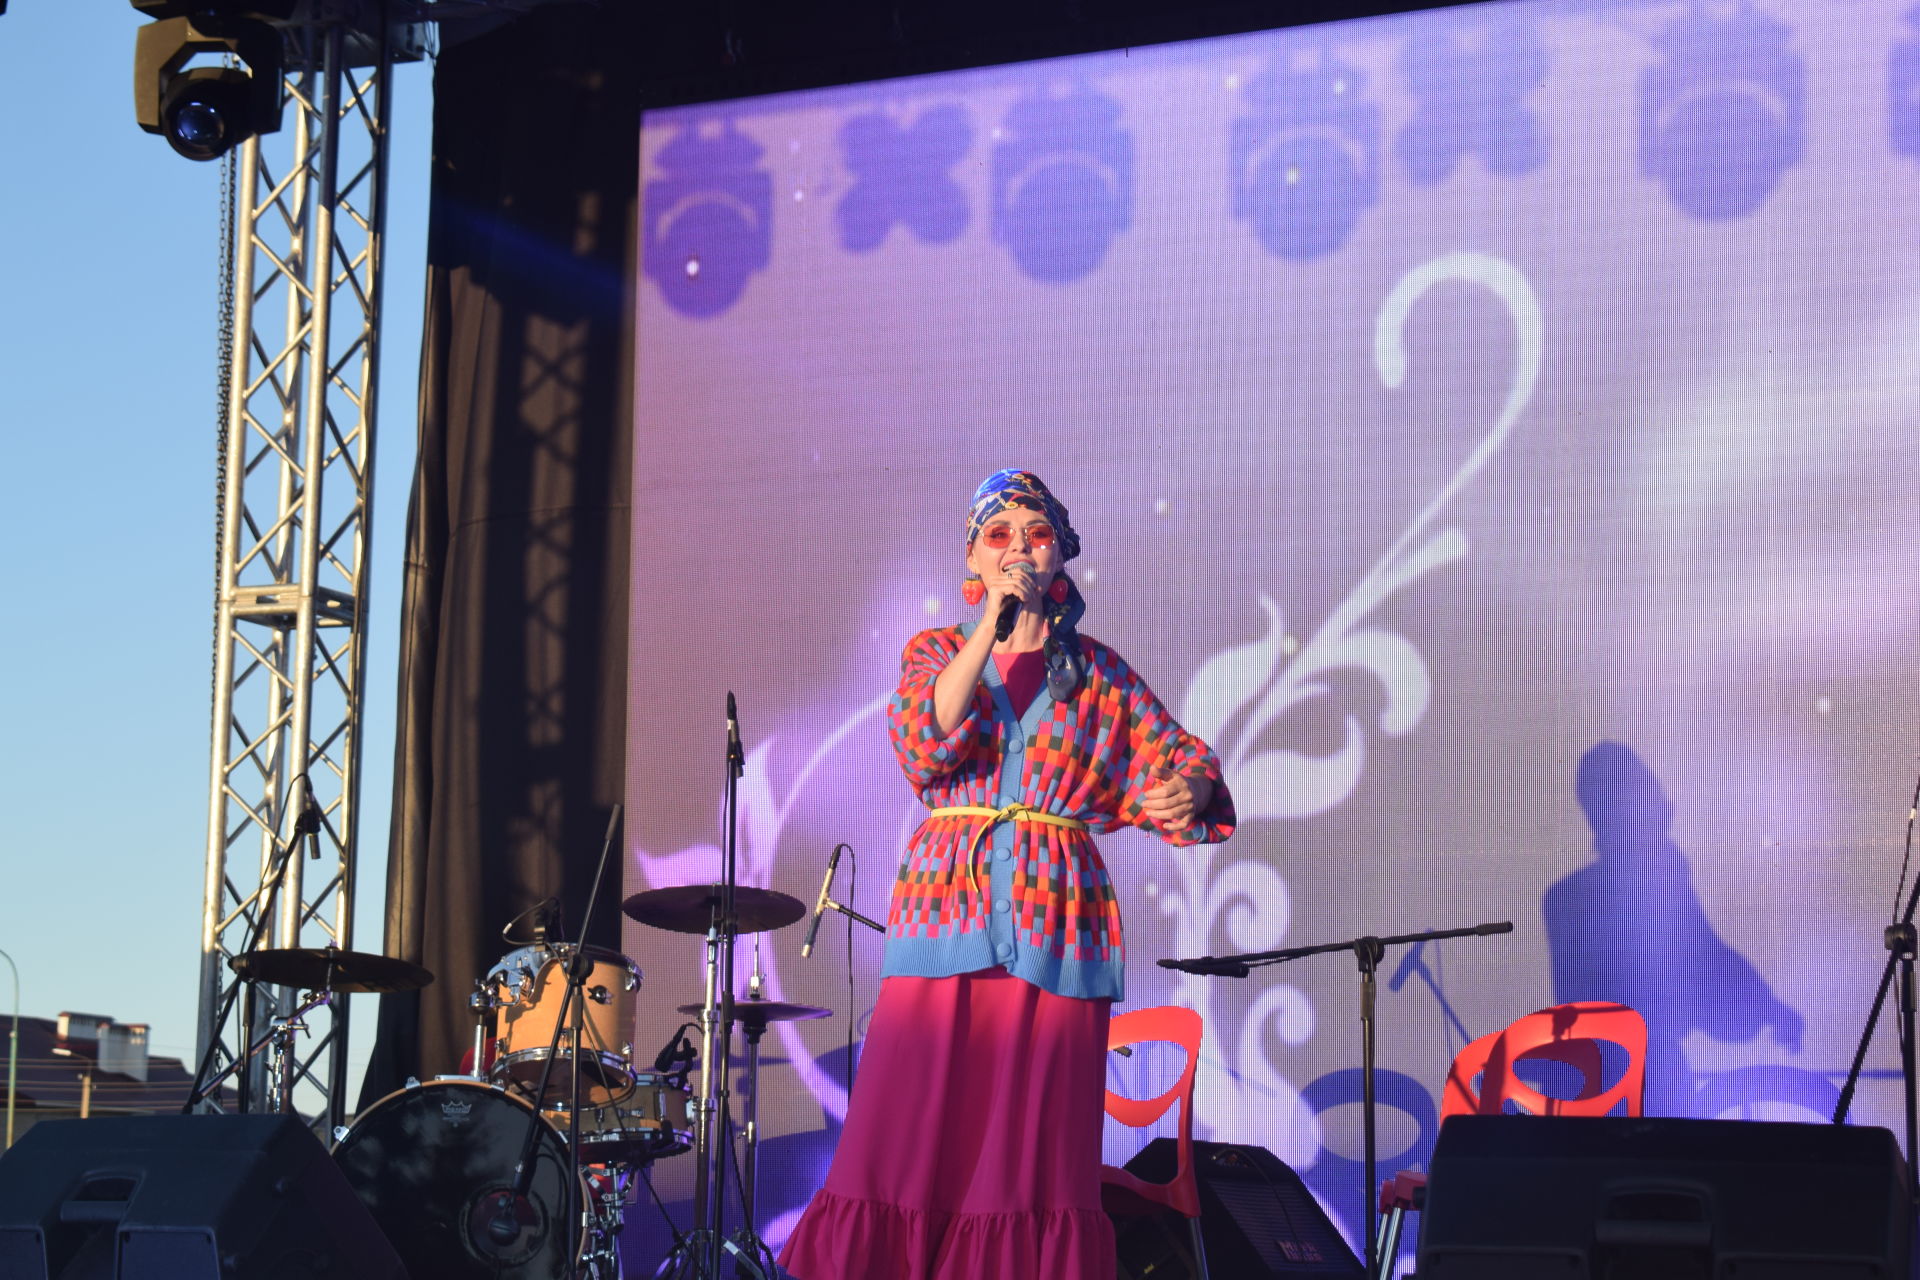 В Азнакаево состоялся необычный фестиваль «Зейнаб фест»